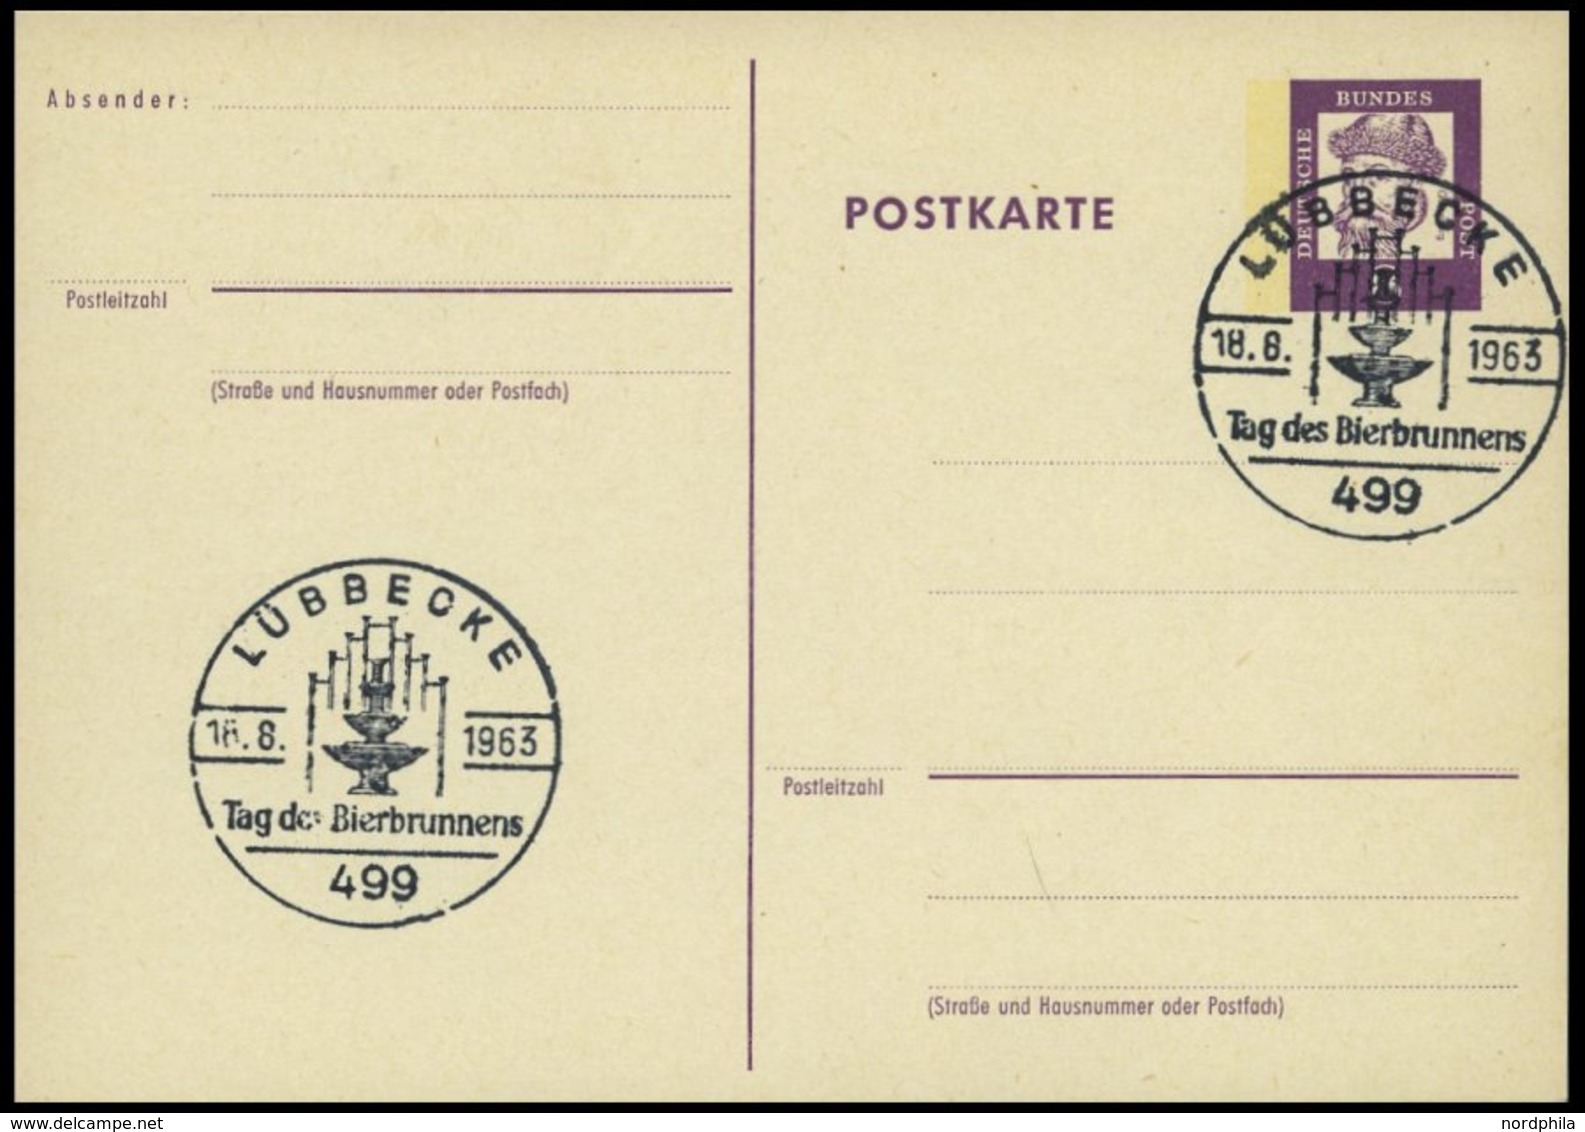 GANZSACHEN P 73 BRIEF, 1962, 8 Pf. Gutenberg, Postkarte In Grotesk-Schrift, Leer Gestempelt Mit Sonderstempel LÜBBECKE T - Sammlungen